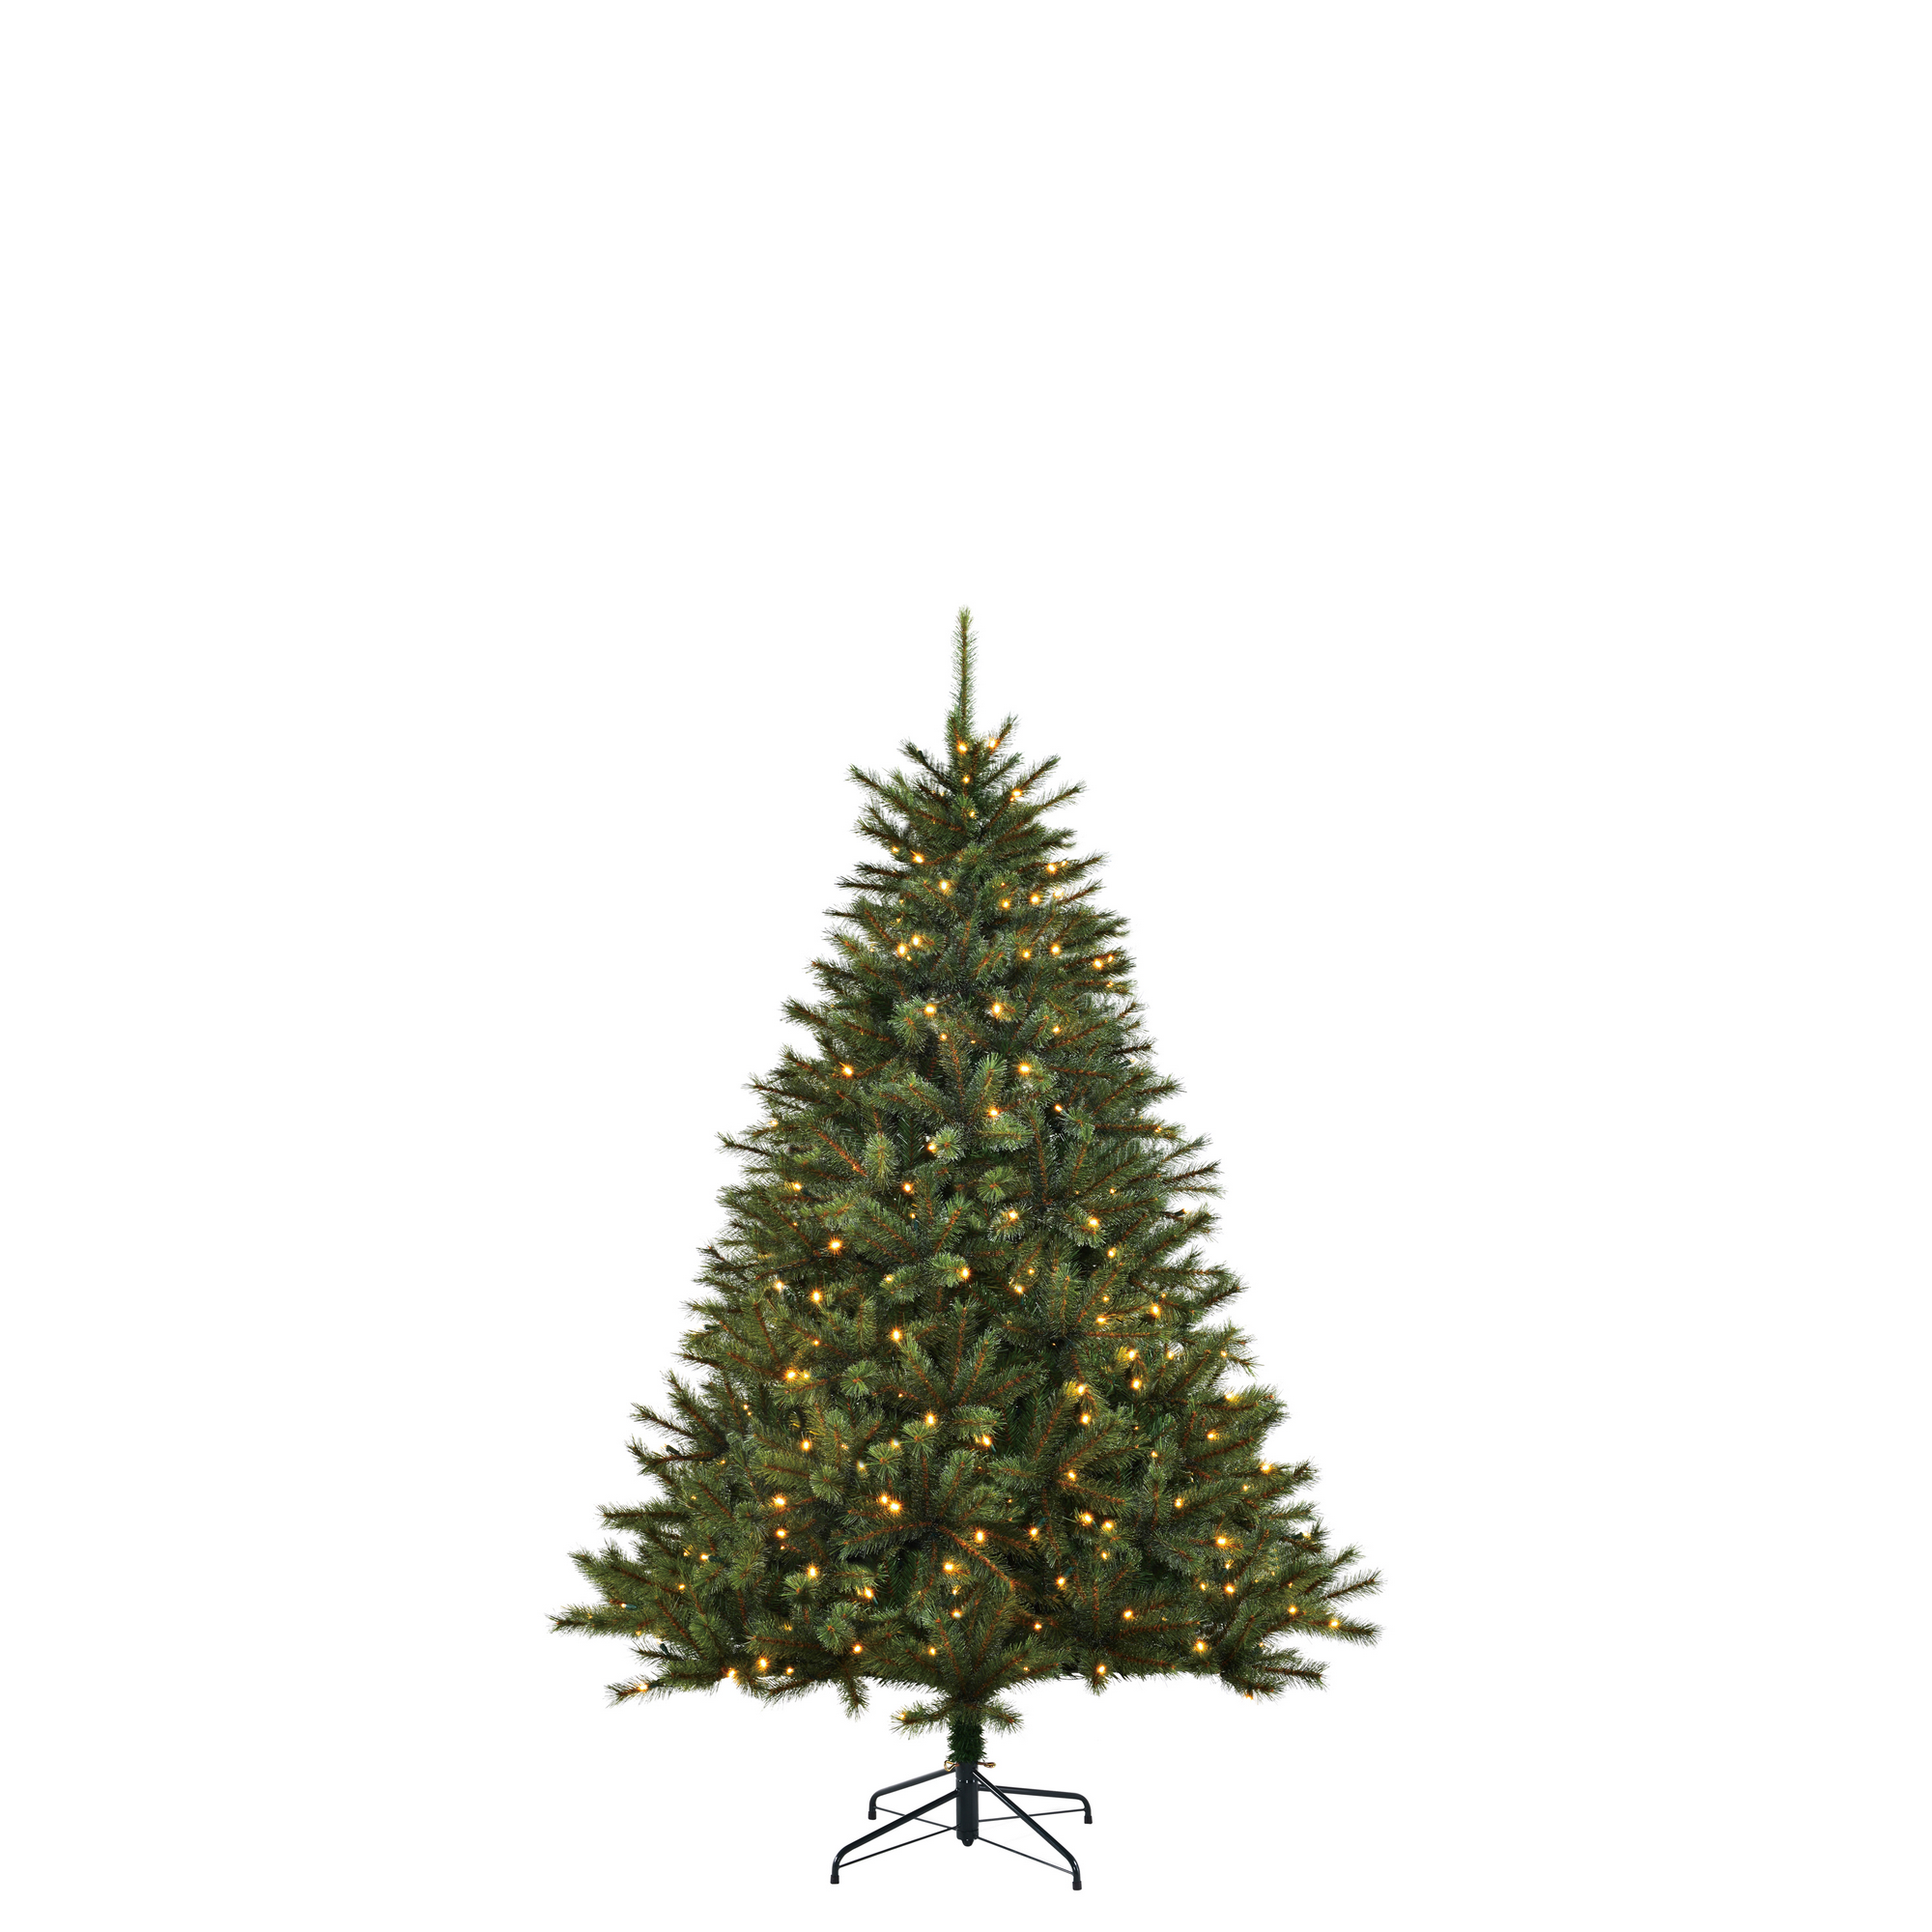 Künstlicher Weihnachtsbaum 'Toronto' grün 120 cm, mit LED-Beleuchtung + product picture